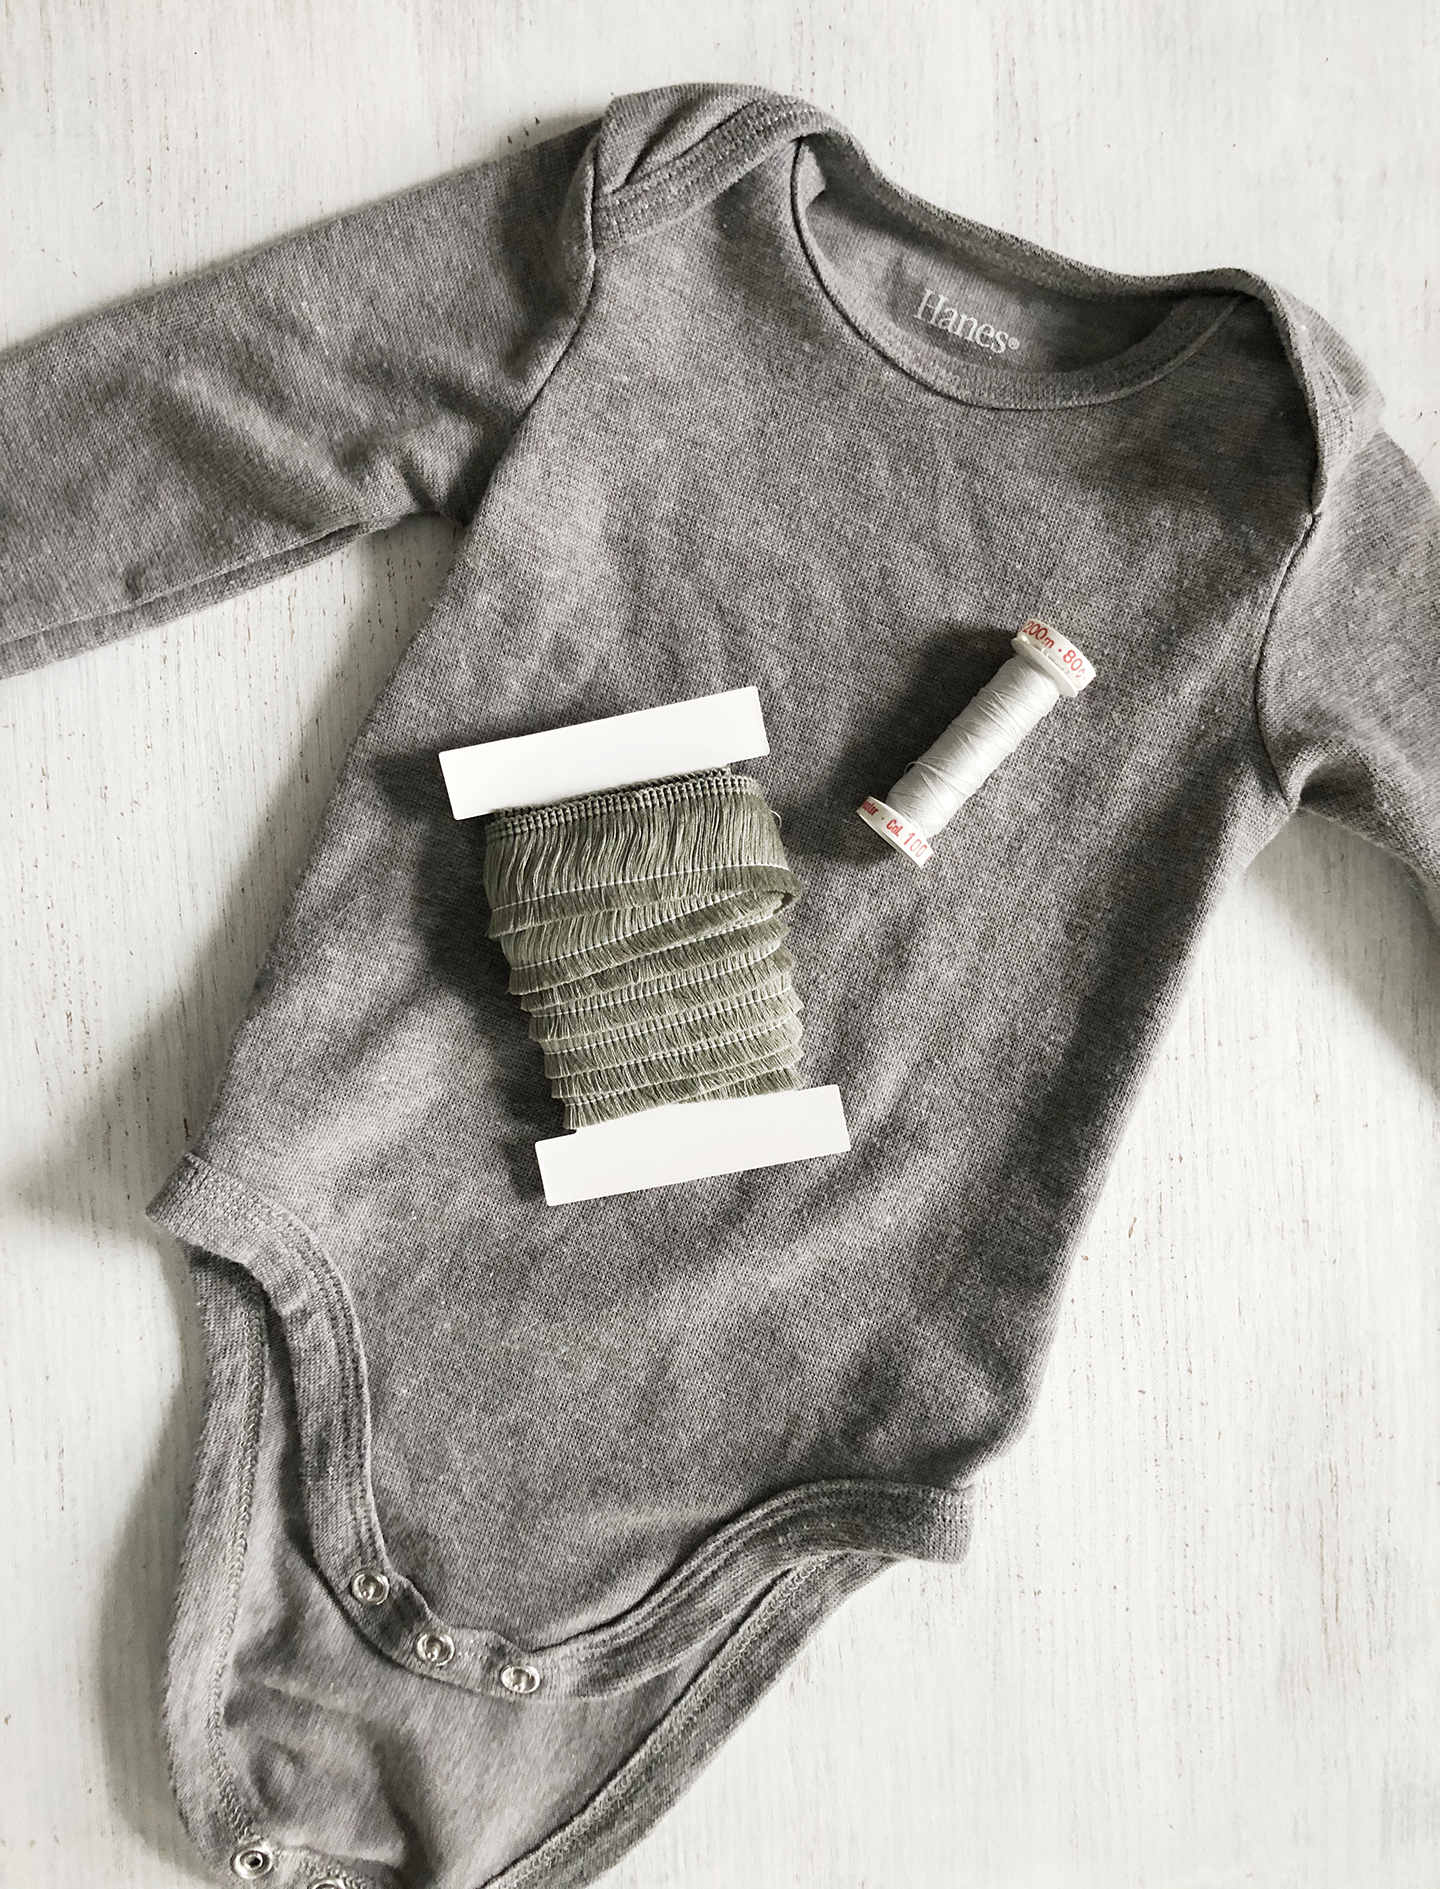 Easy DIY Fringe Trim Bodysuit For Baby /// By Design Fixation #baby #fringe #pompoms #diy #sewing